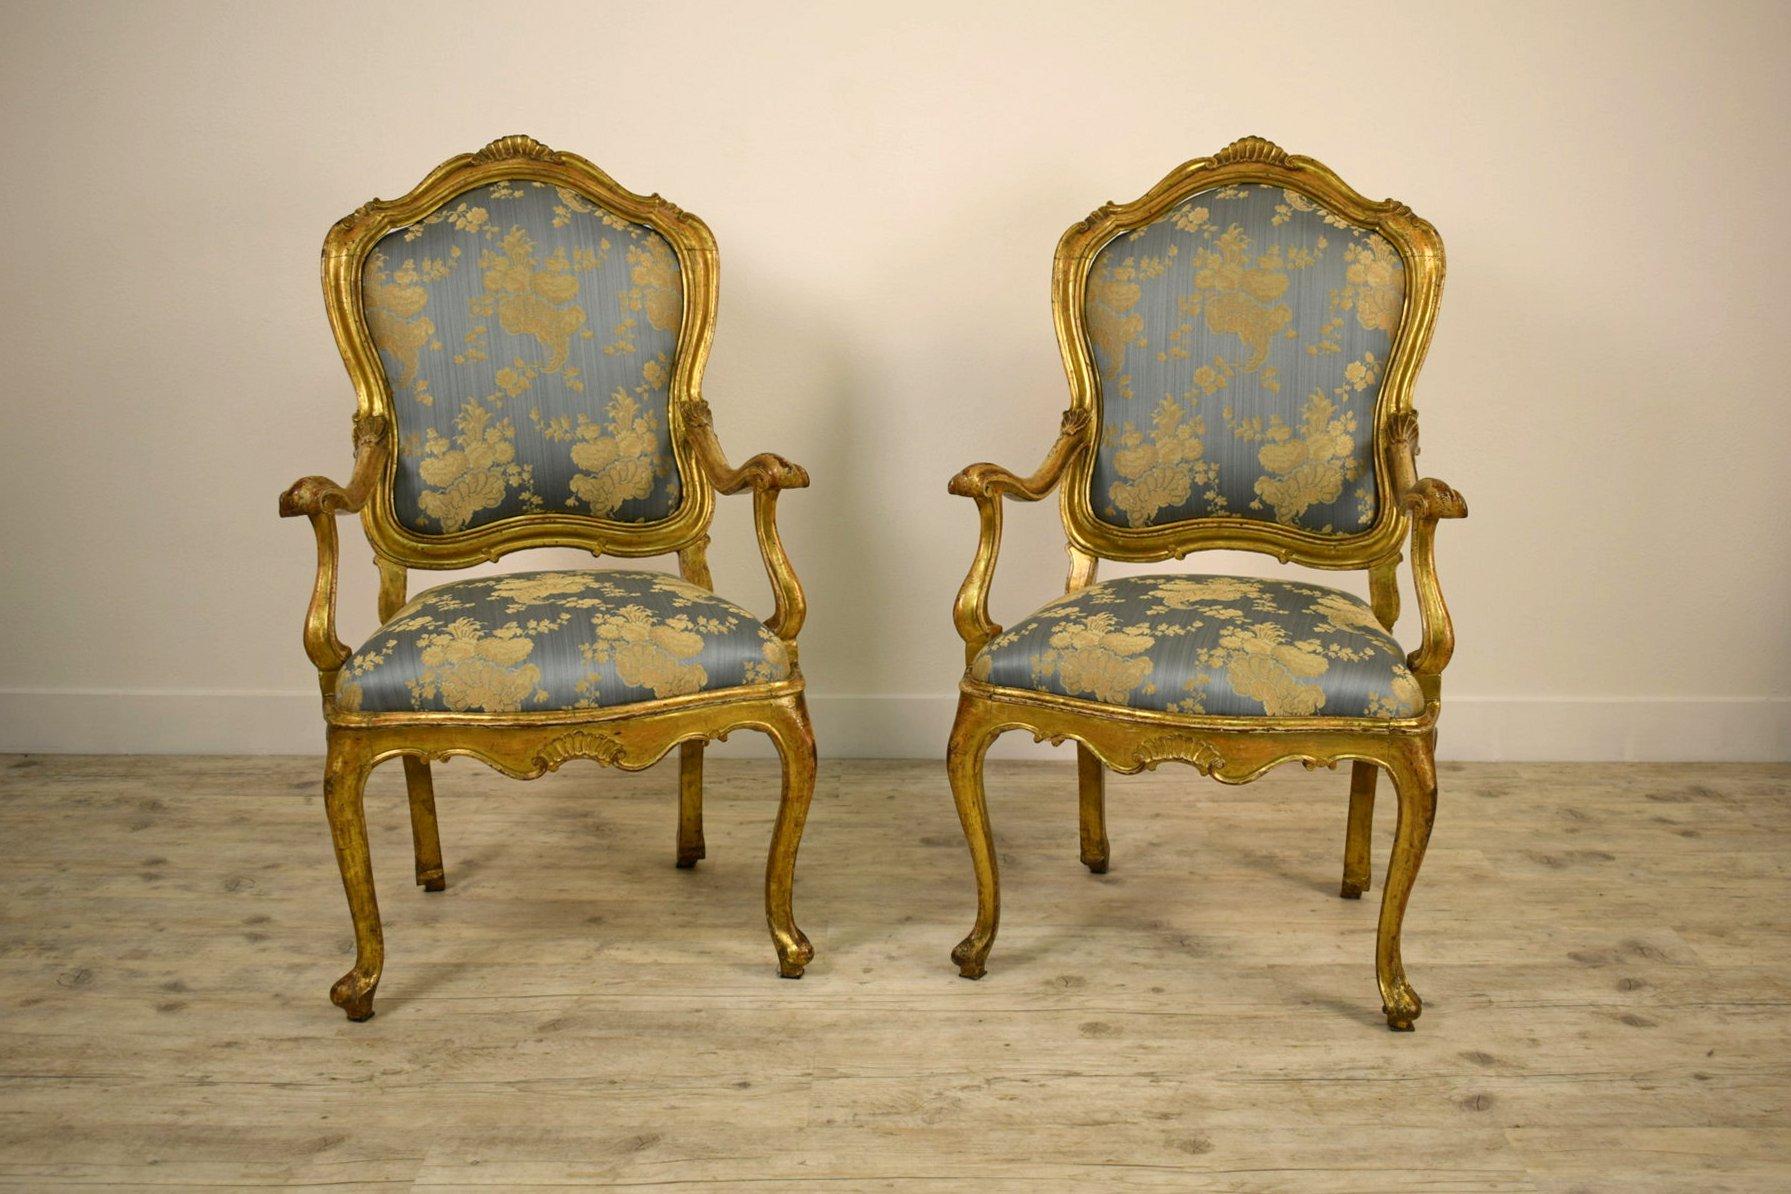 Italienische Sessel aus vergoldetem Holz, 18.

Dieses raffinierte und bedeutende Sesselpaar wurde um die Mitte des 18. Jahrhunderts in Venedig, Italien, aus geschnitztem Goldholz gefertigt und spiegelt die typischen stilistischen Vorgaben des